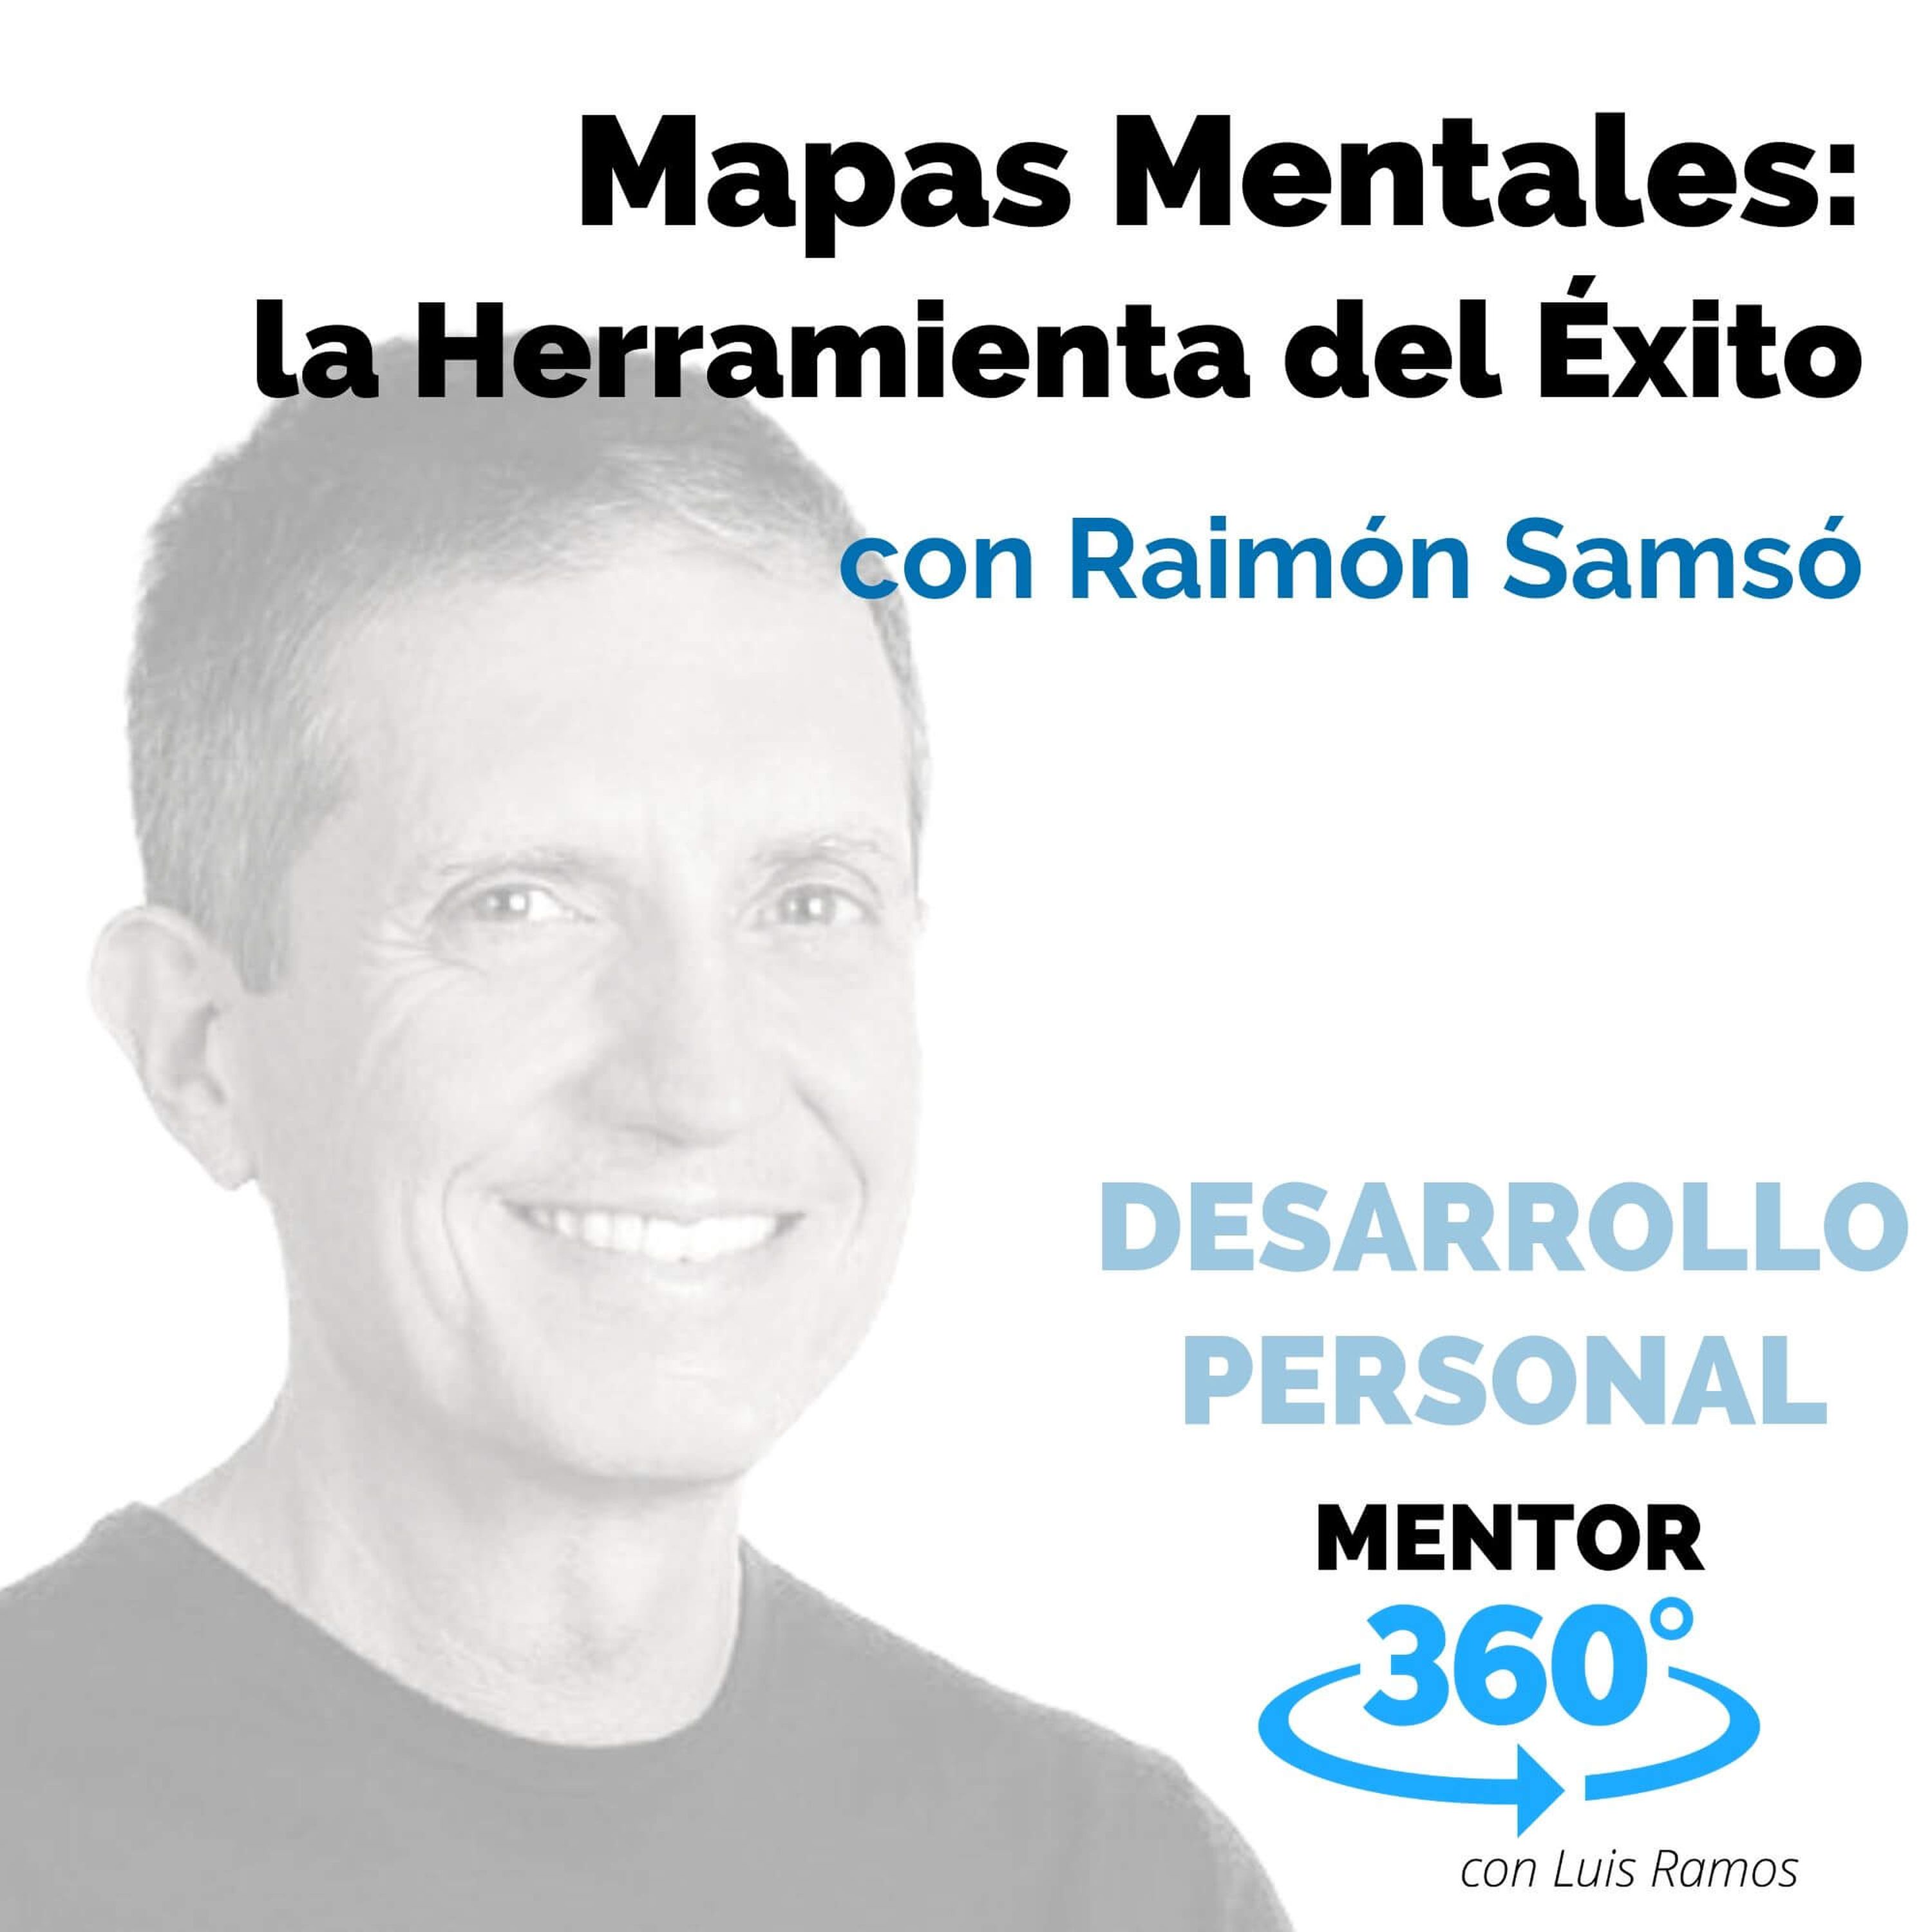 Mapas Mentales: La Herramienta del Éxito, con Raimón Samsó - DESARROLLO PERSONAL - MENTOR360